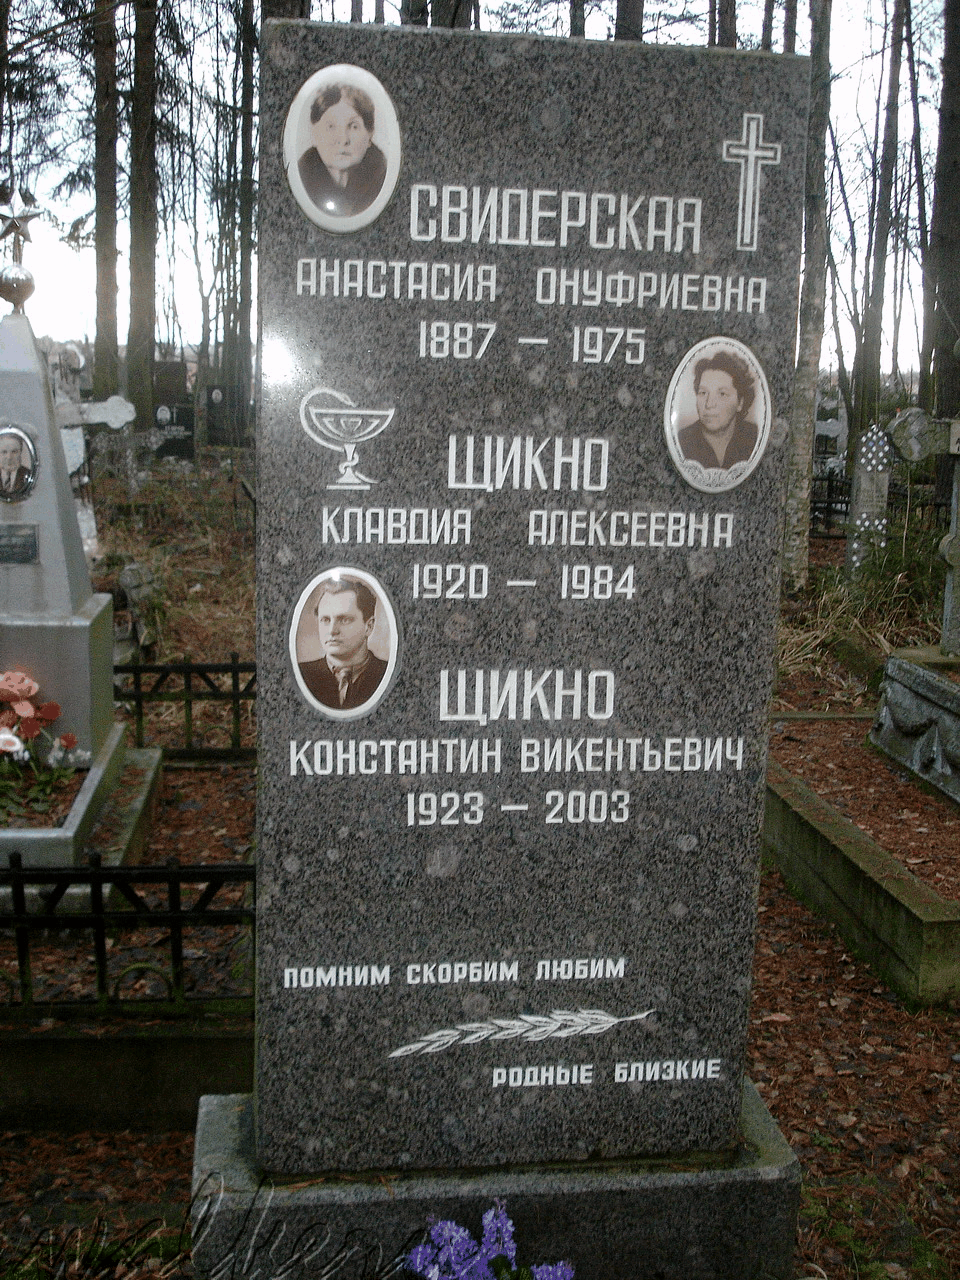 Могила ЩИКНО К.В. на Северном кладбище